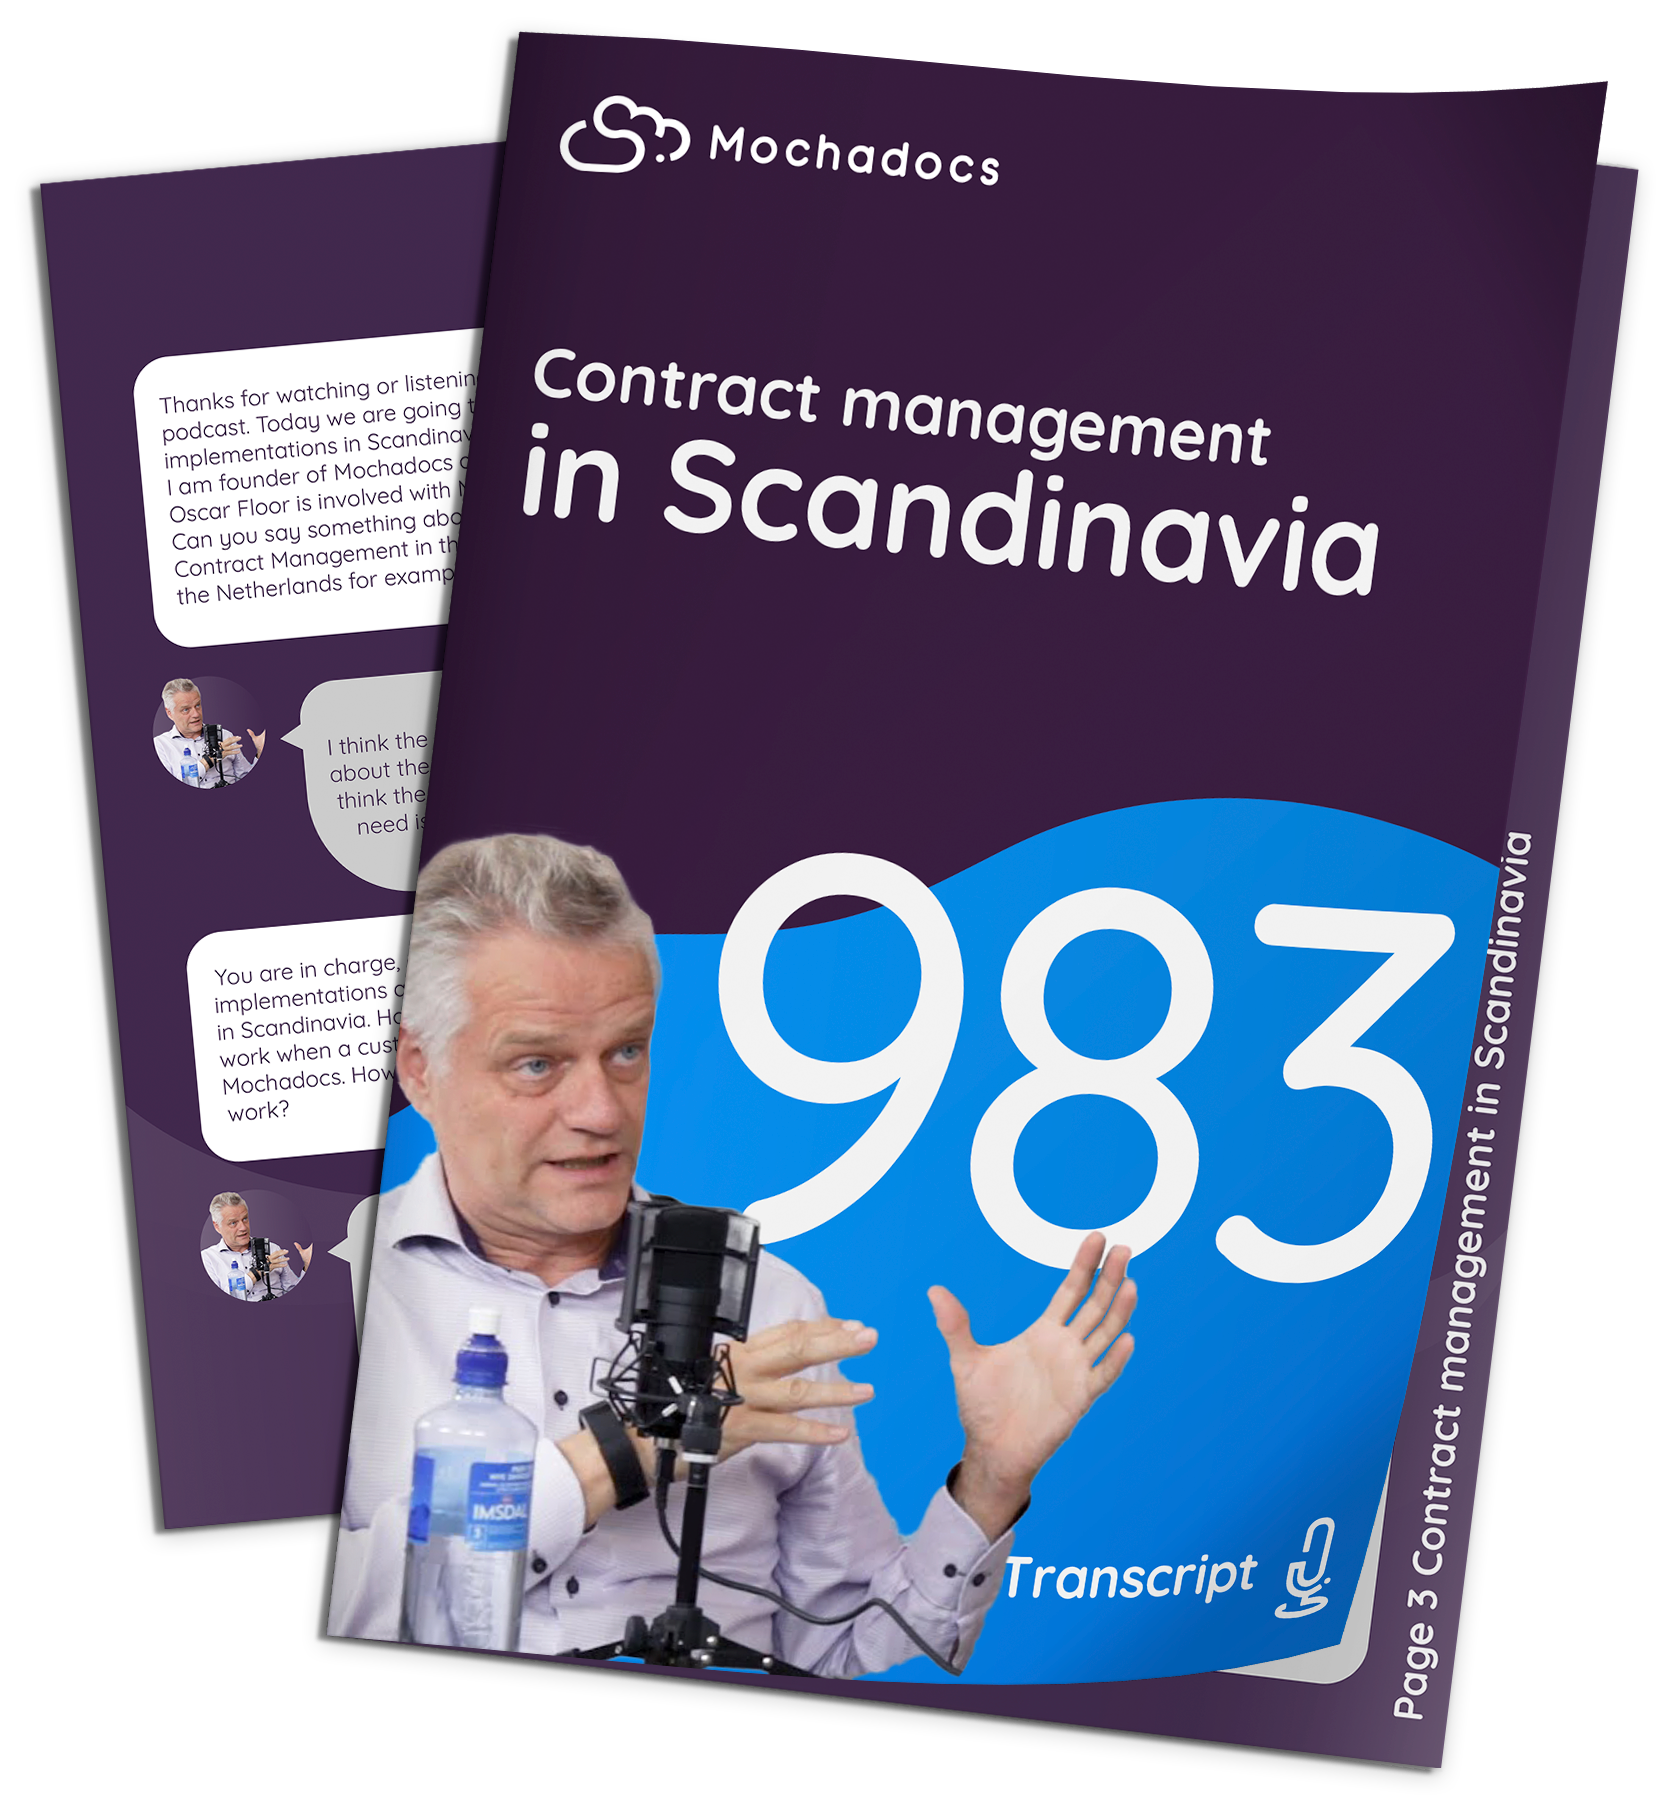 Contract management in Scandinavia 12